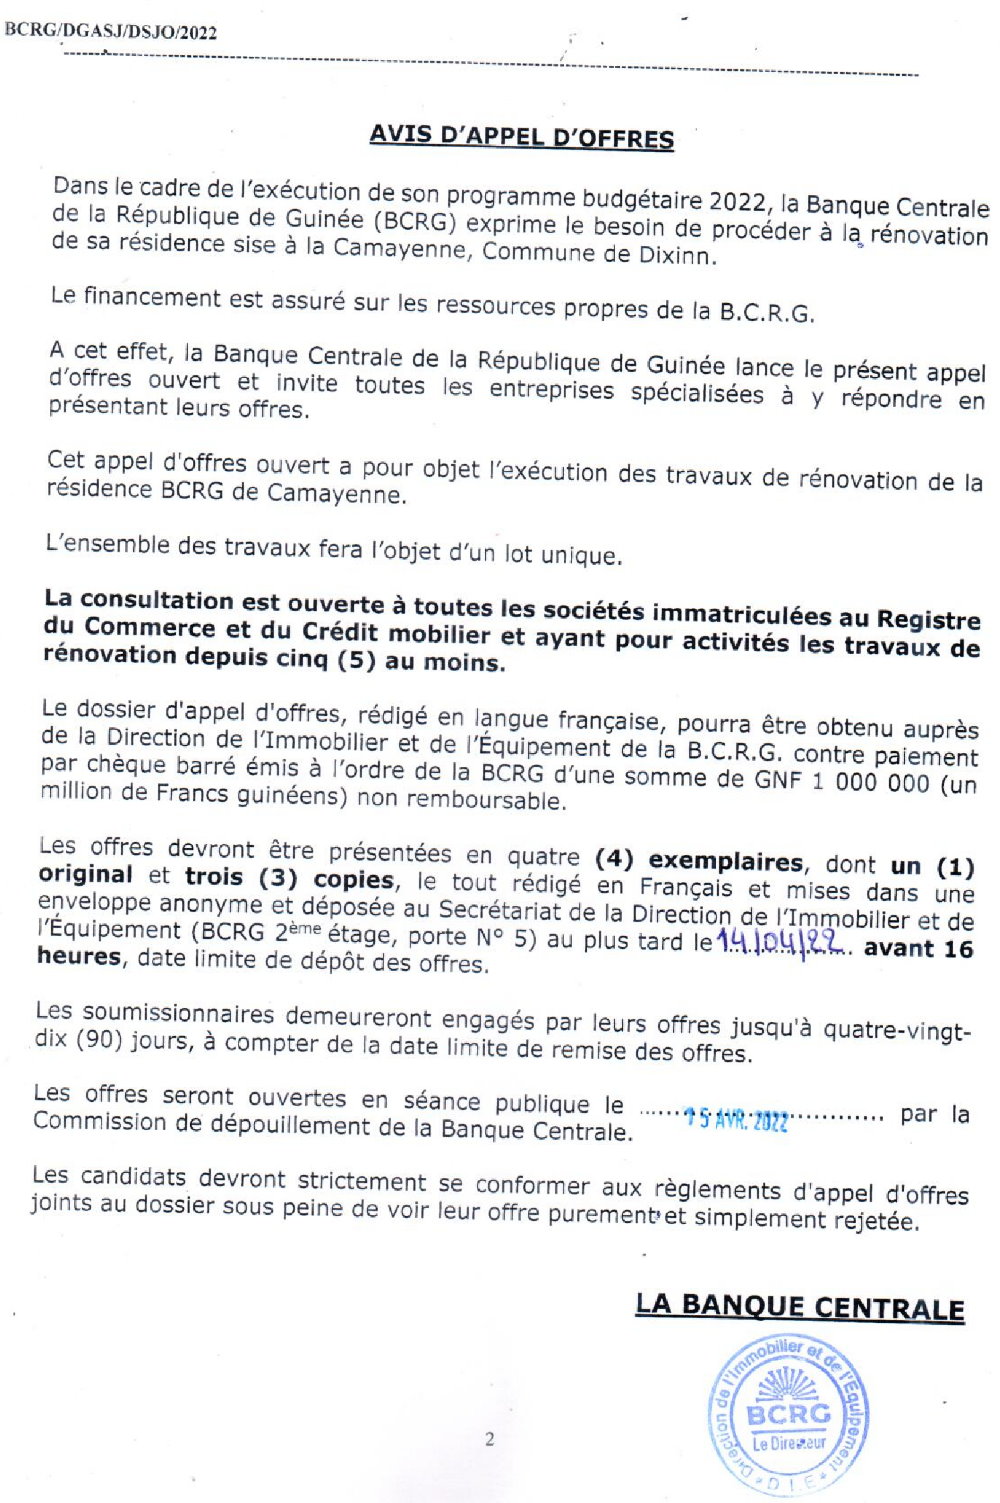 Avis d'appel d'offres pour la rénovation de la résidence de la BCRG sise à la Camayenne, Commune de Dixinn